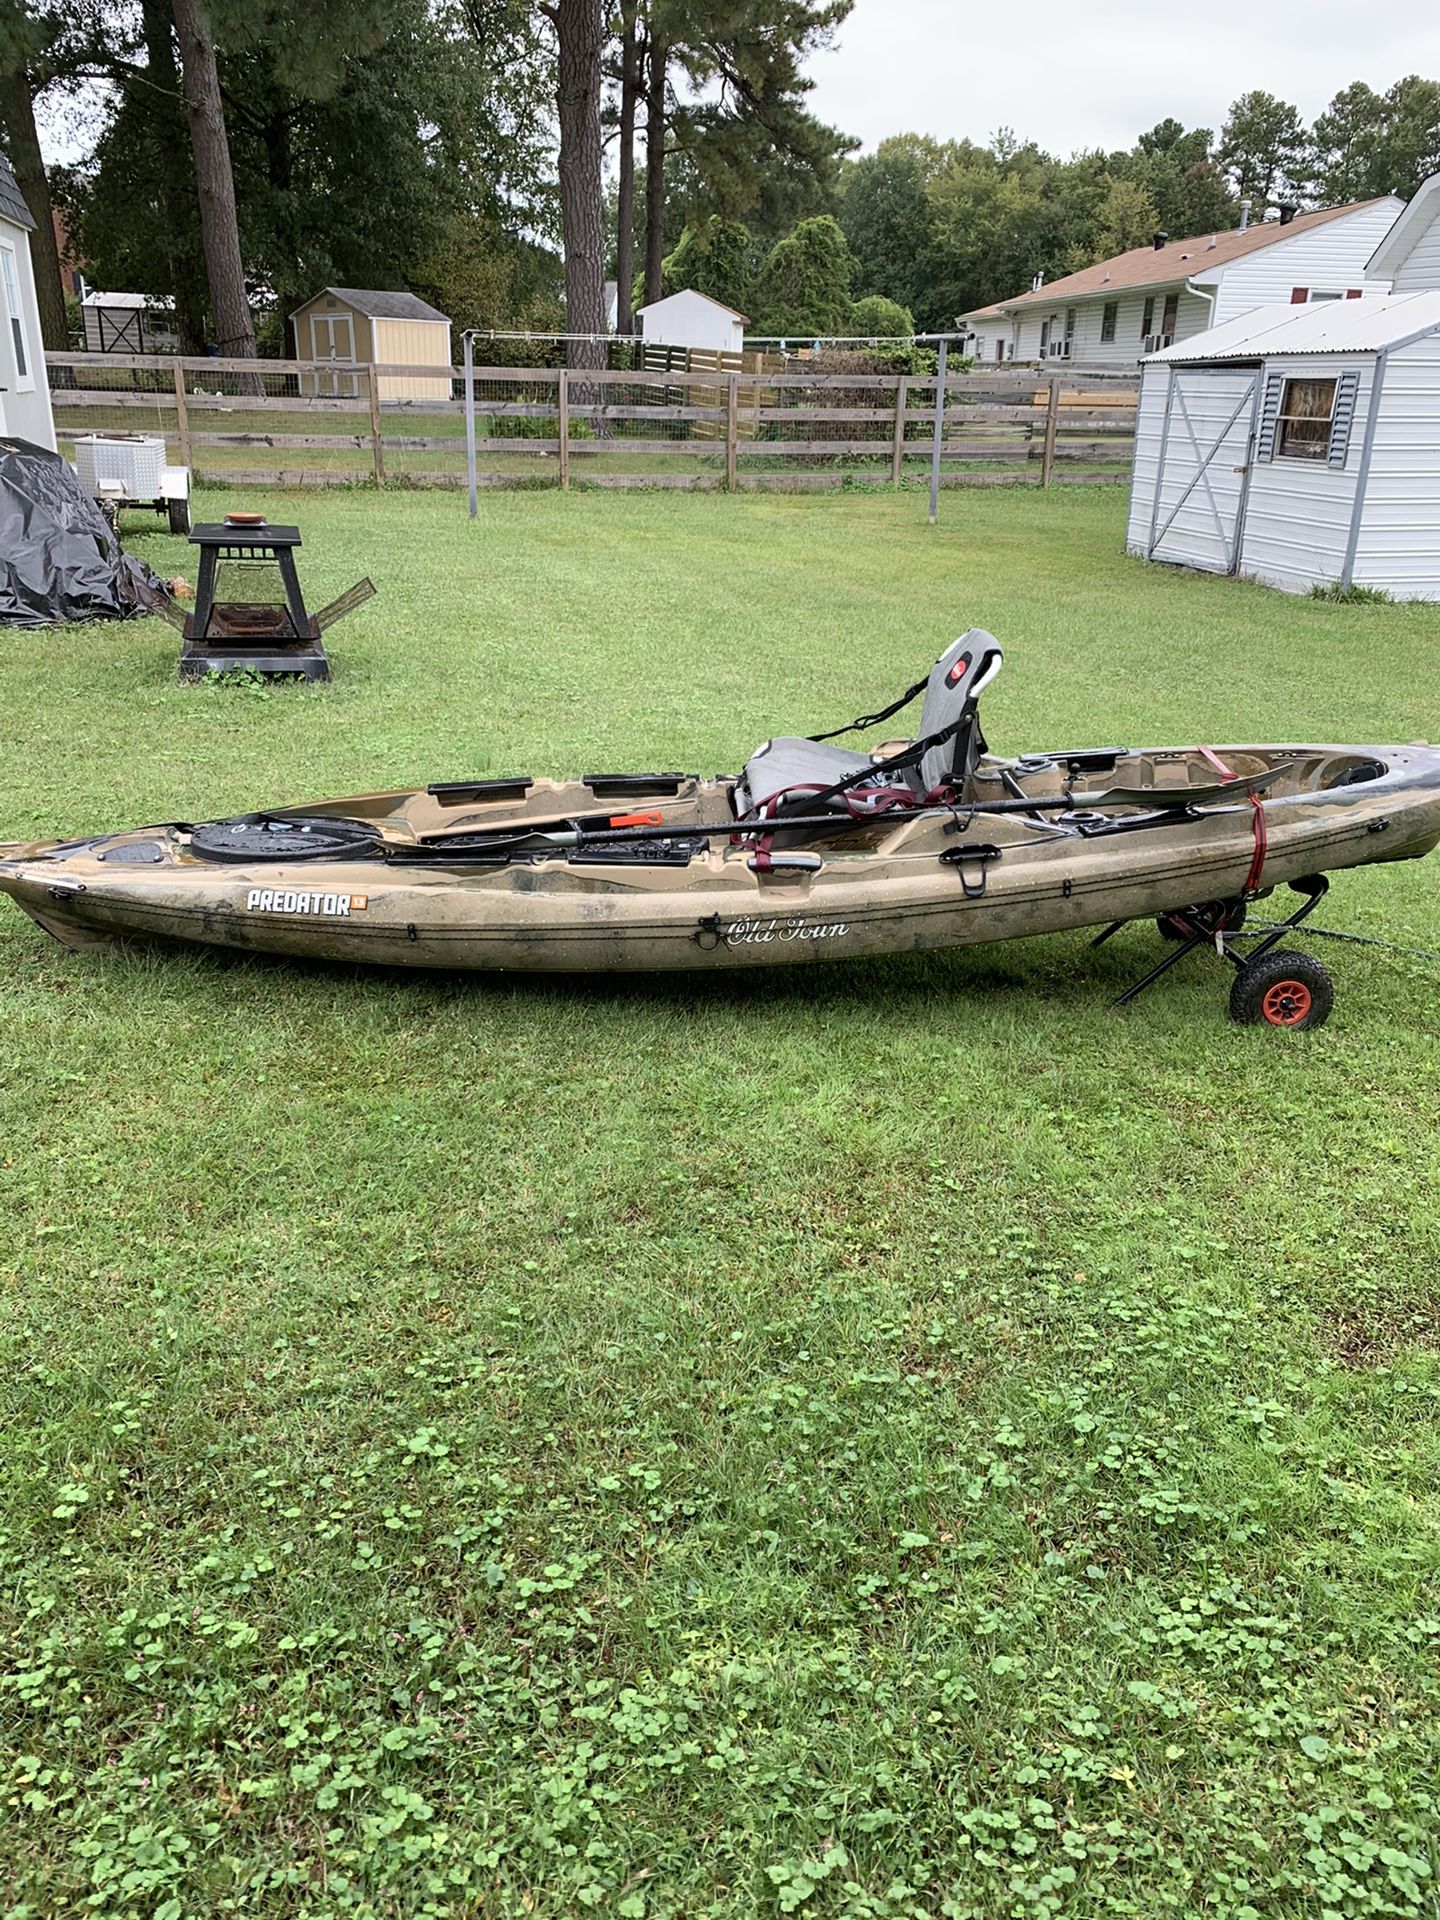 13’ Old Town Predator fishing kayak